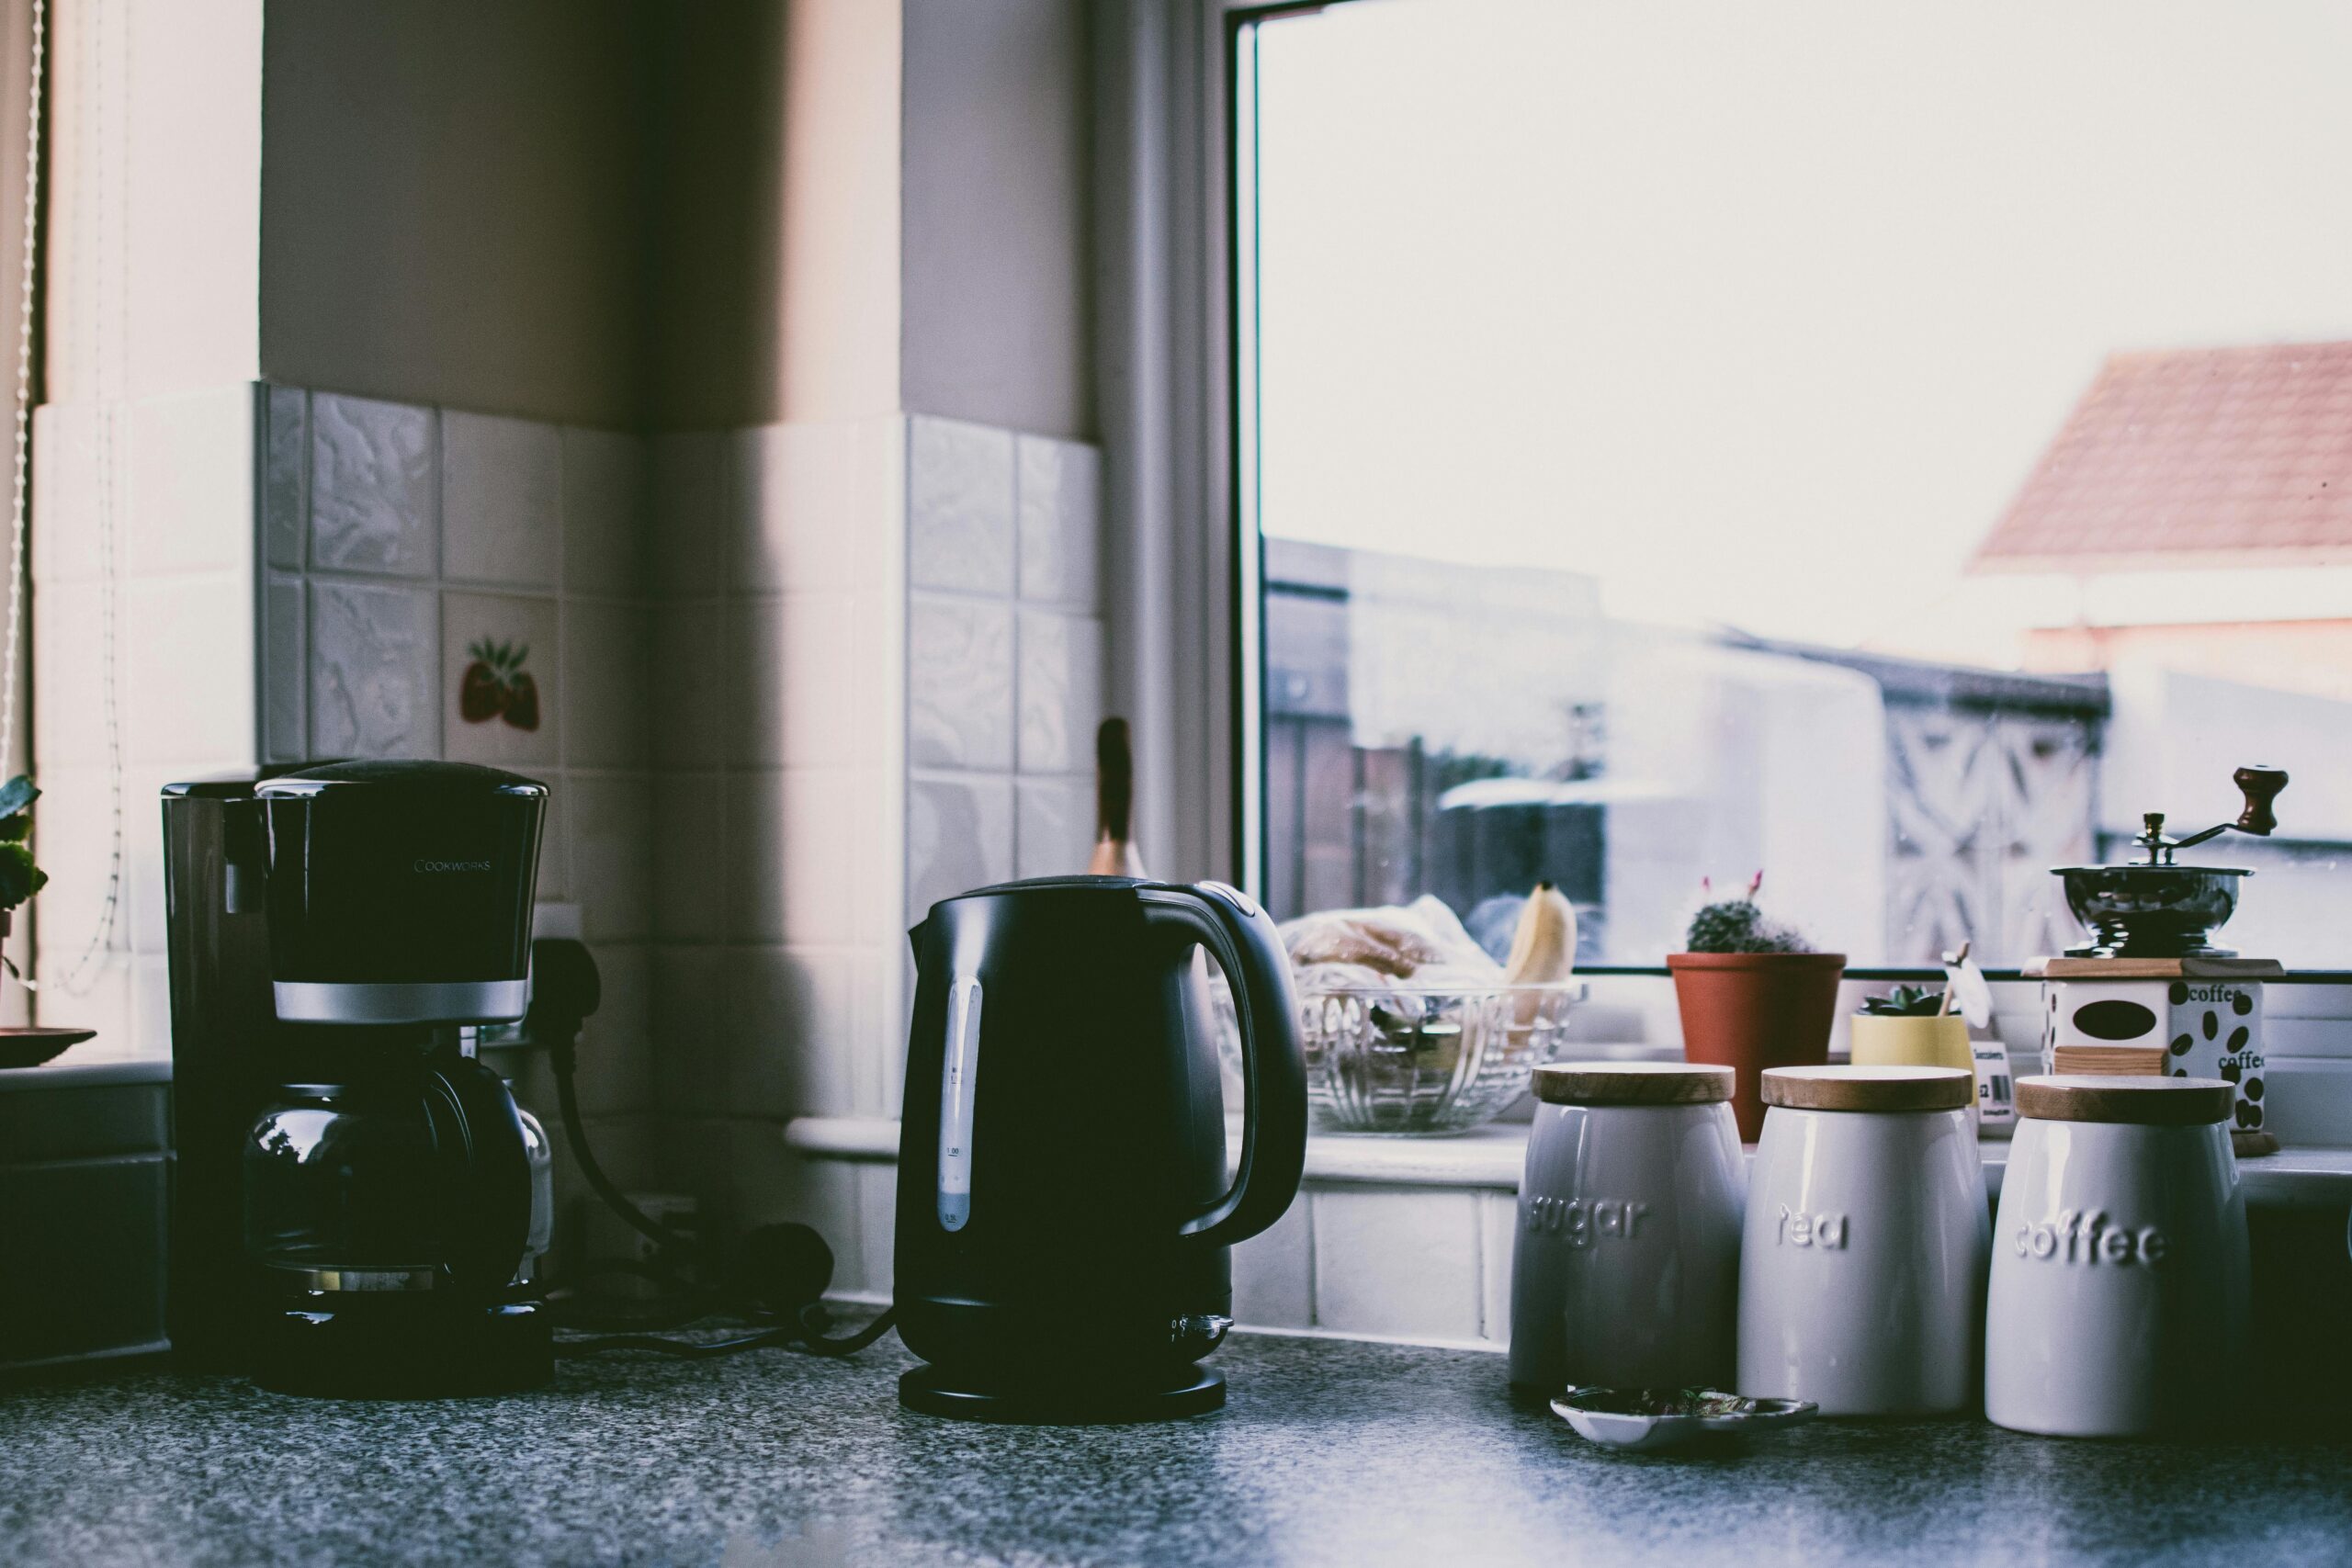 Welche Küchengeräte sind für kleine Küchen am praktischsten?